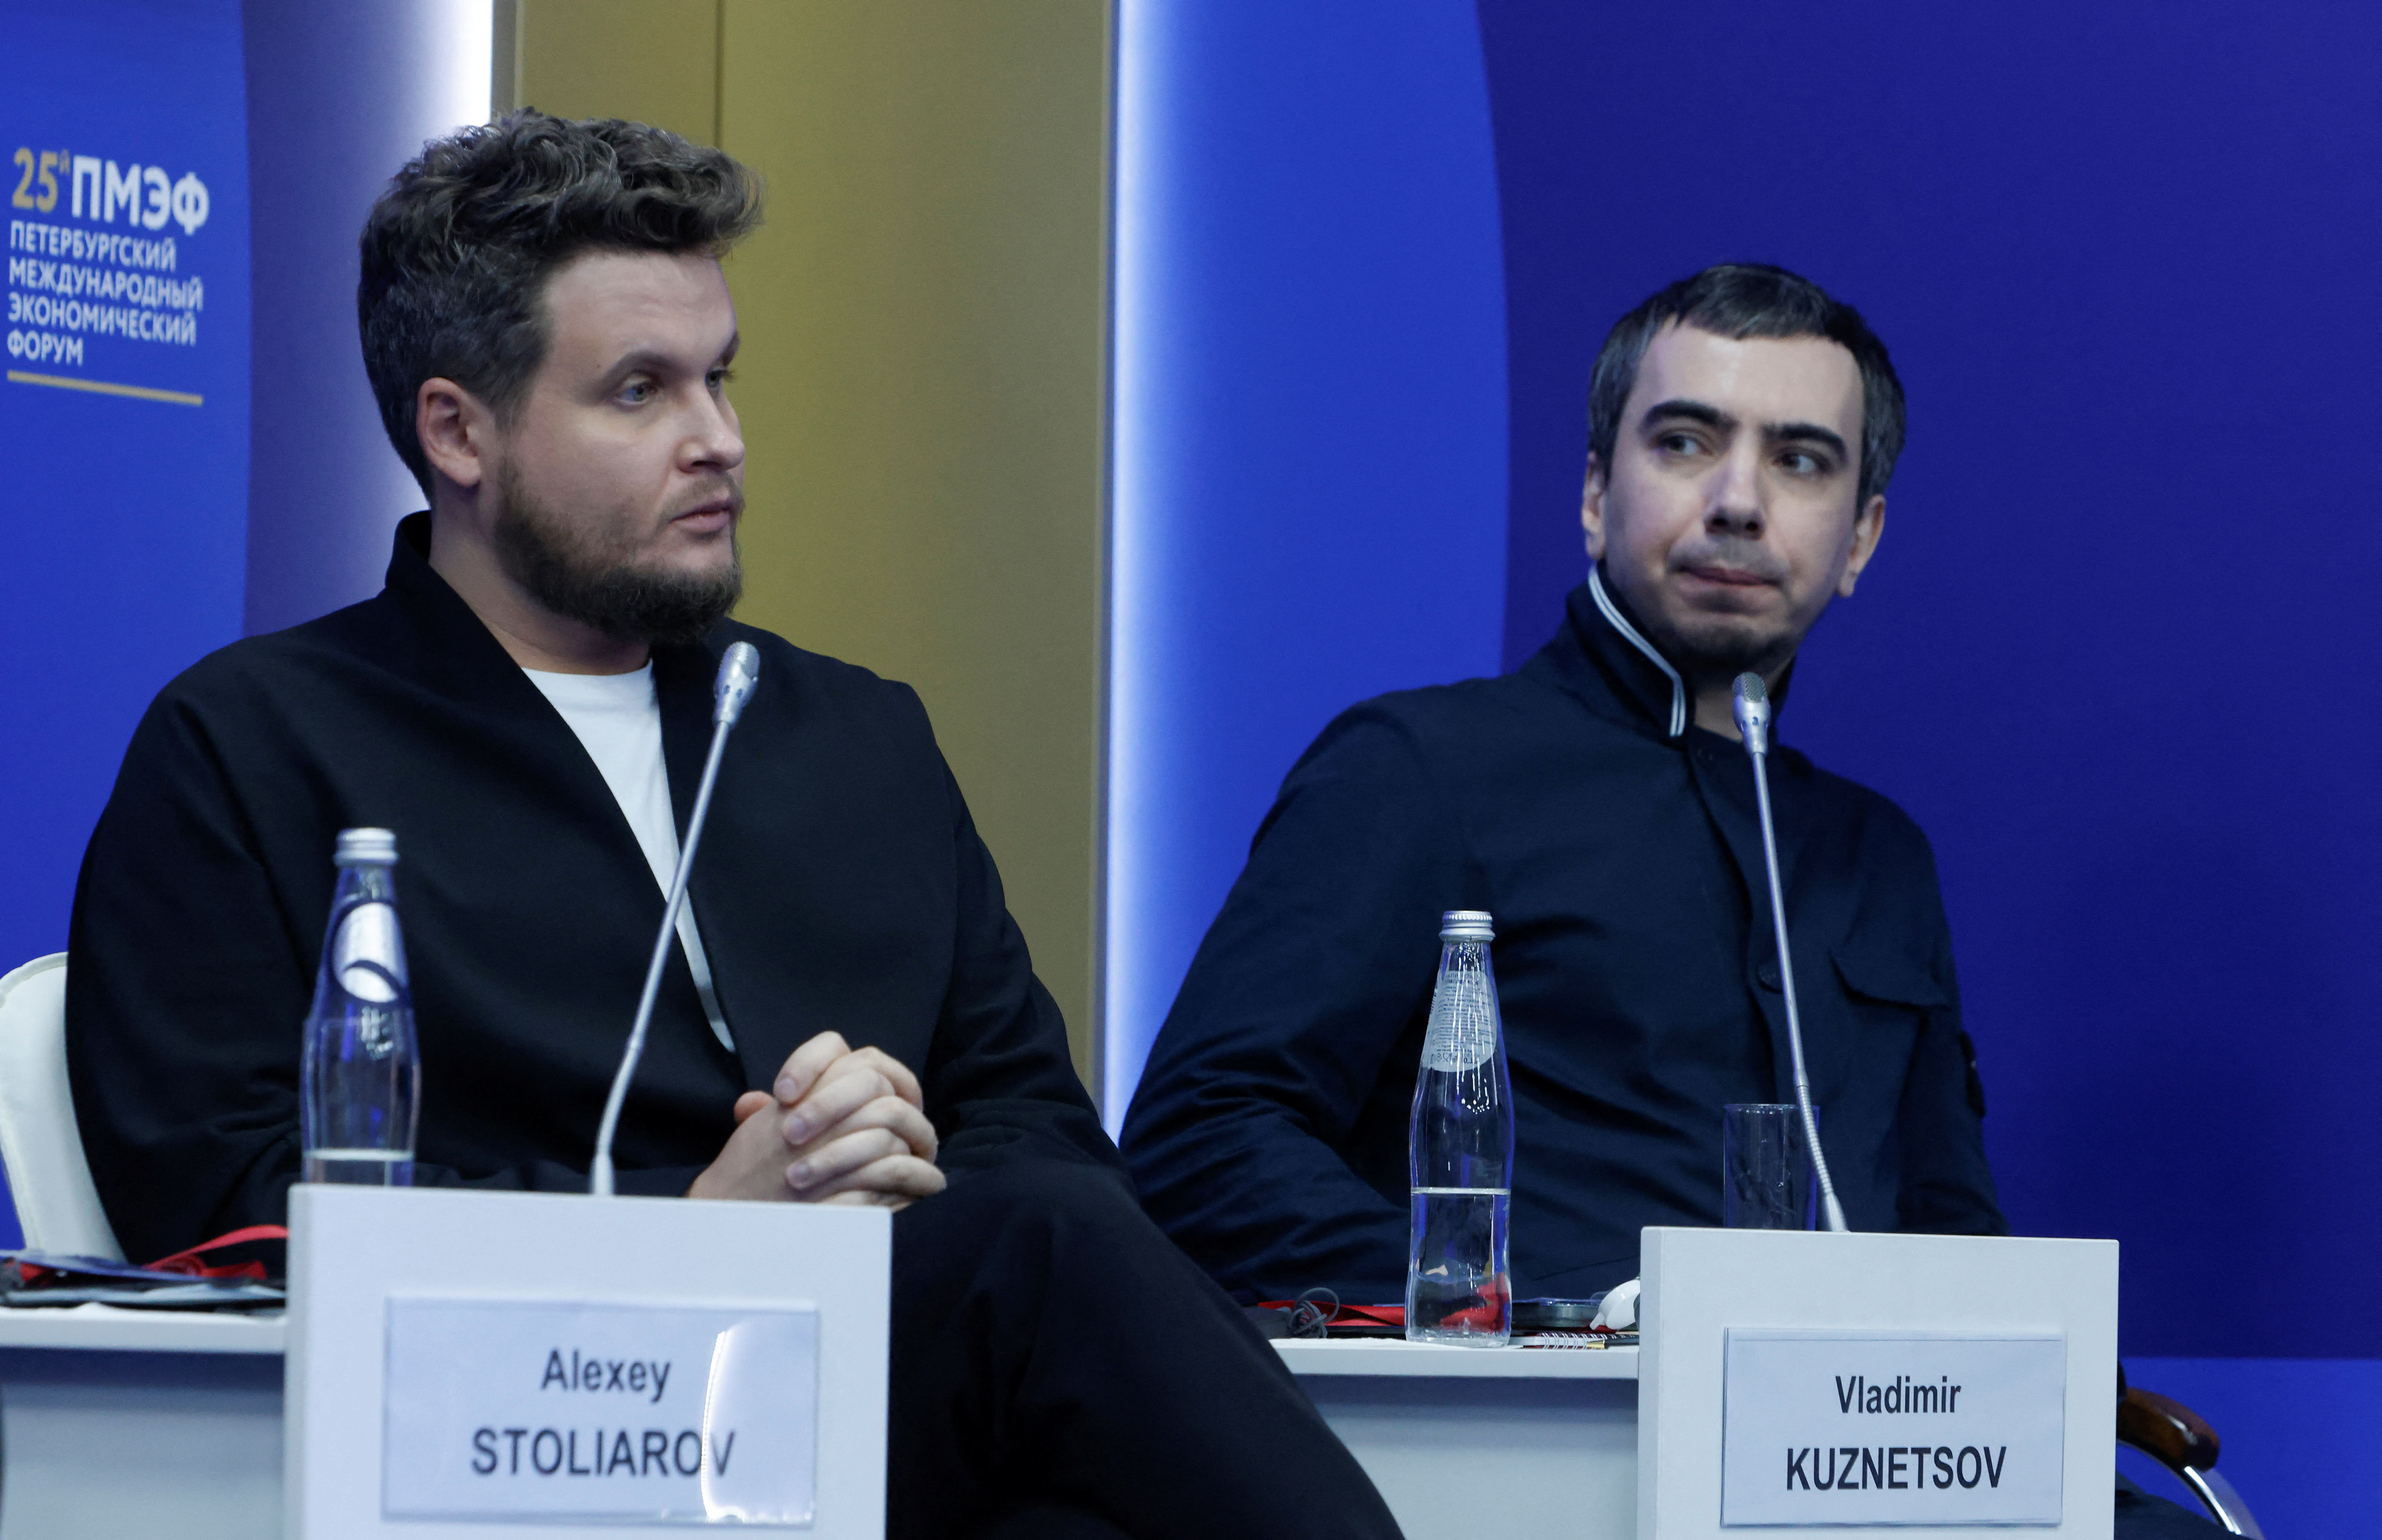 Los bromistas rusos Vladimir Kuznetsov y Aleksei Stolyarov, conocidos como Vovan y Lexus, asisten a una sesión del Foro Económico Internacional de San Petersburgo (SPIEF) en San Petersburgo, Rusia, el 16 de junio de 2022. REUTERS/Maxim Shemetov